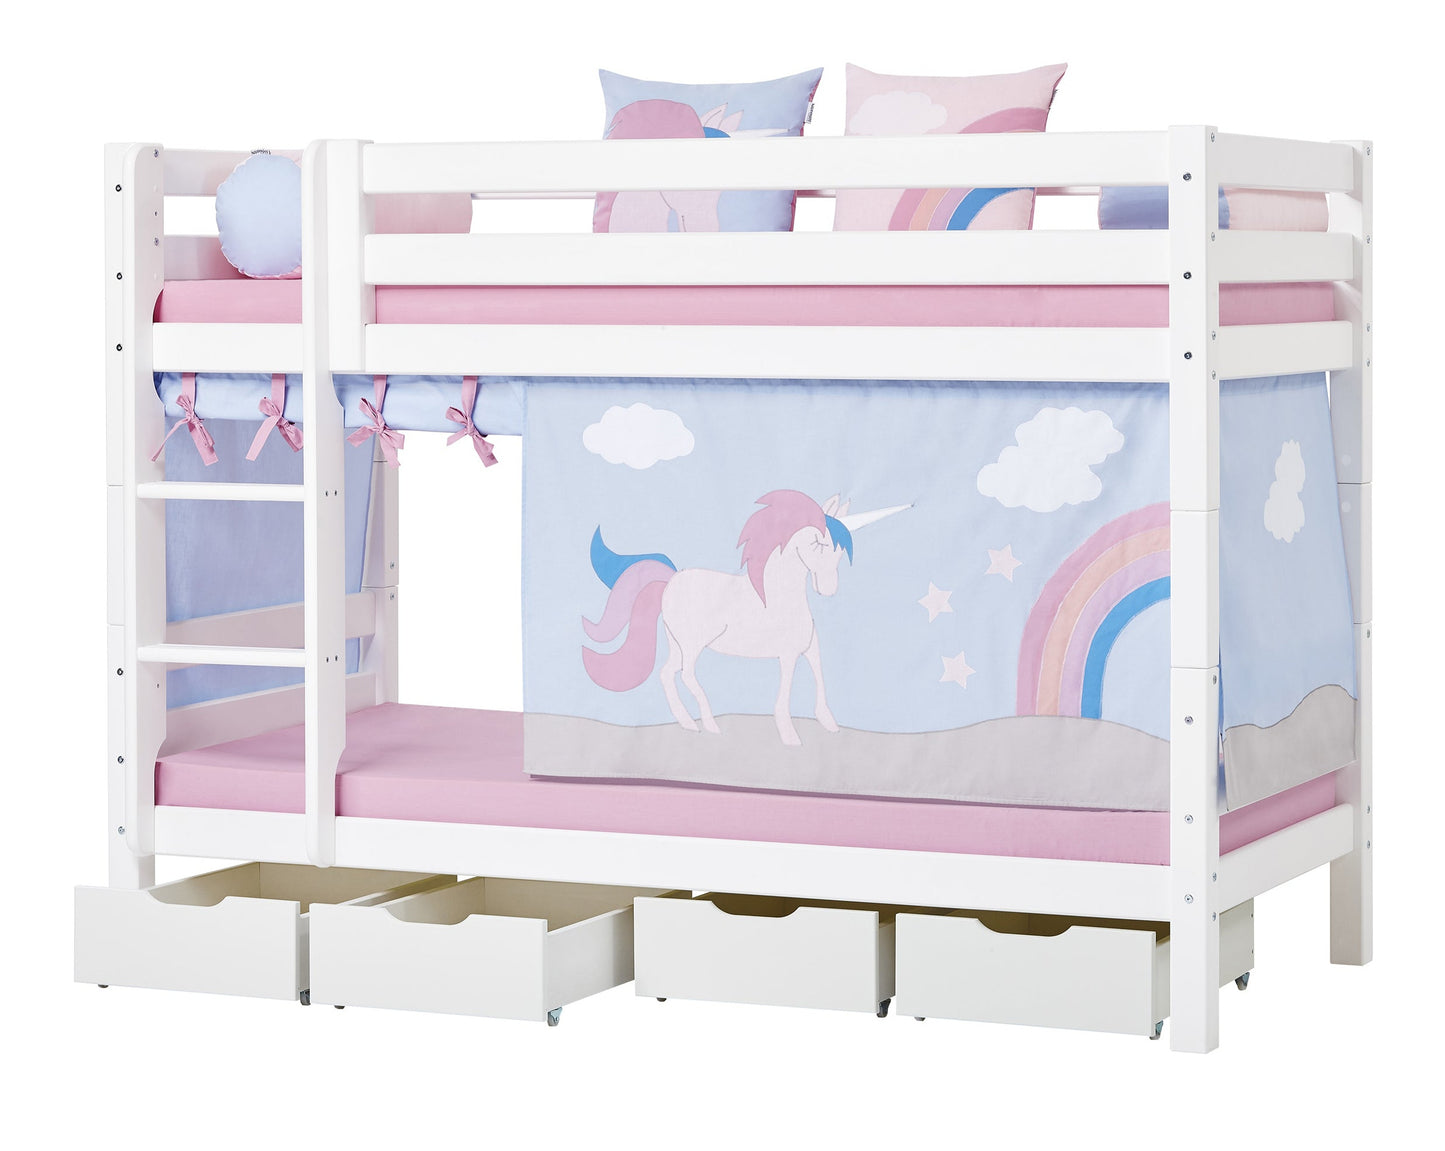 ECO Luxury - Bunk bed - 90x200 cm - white